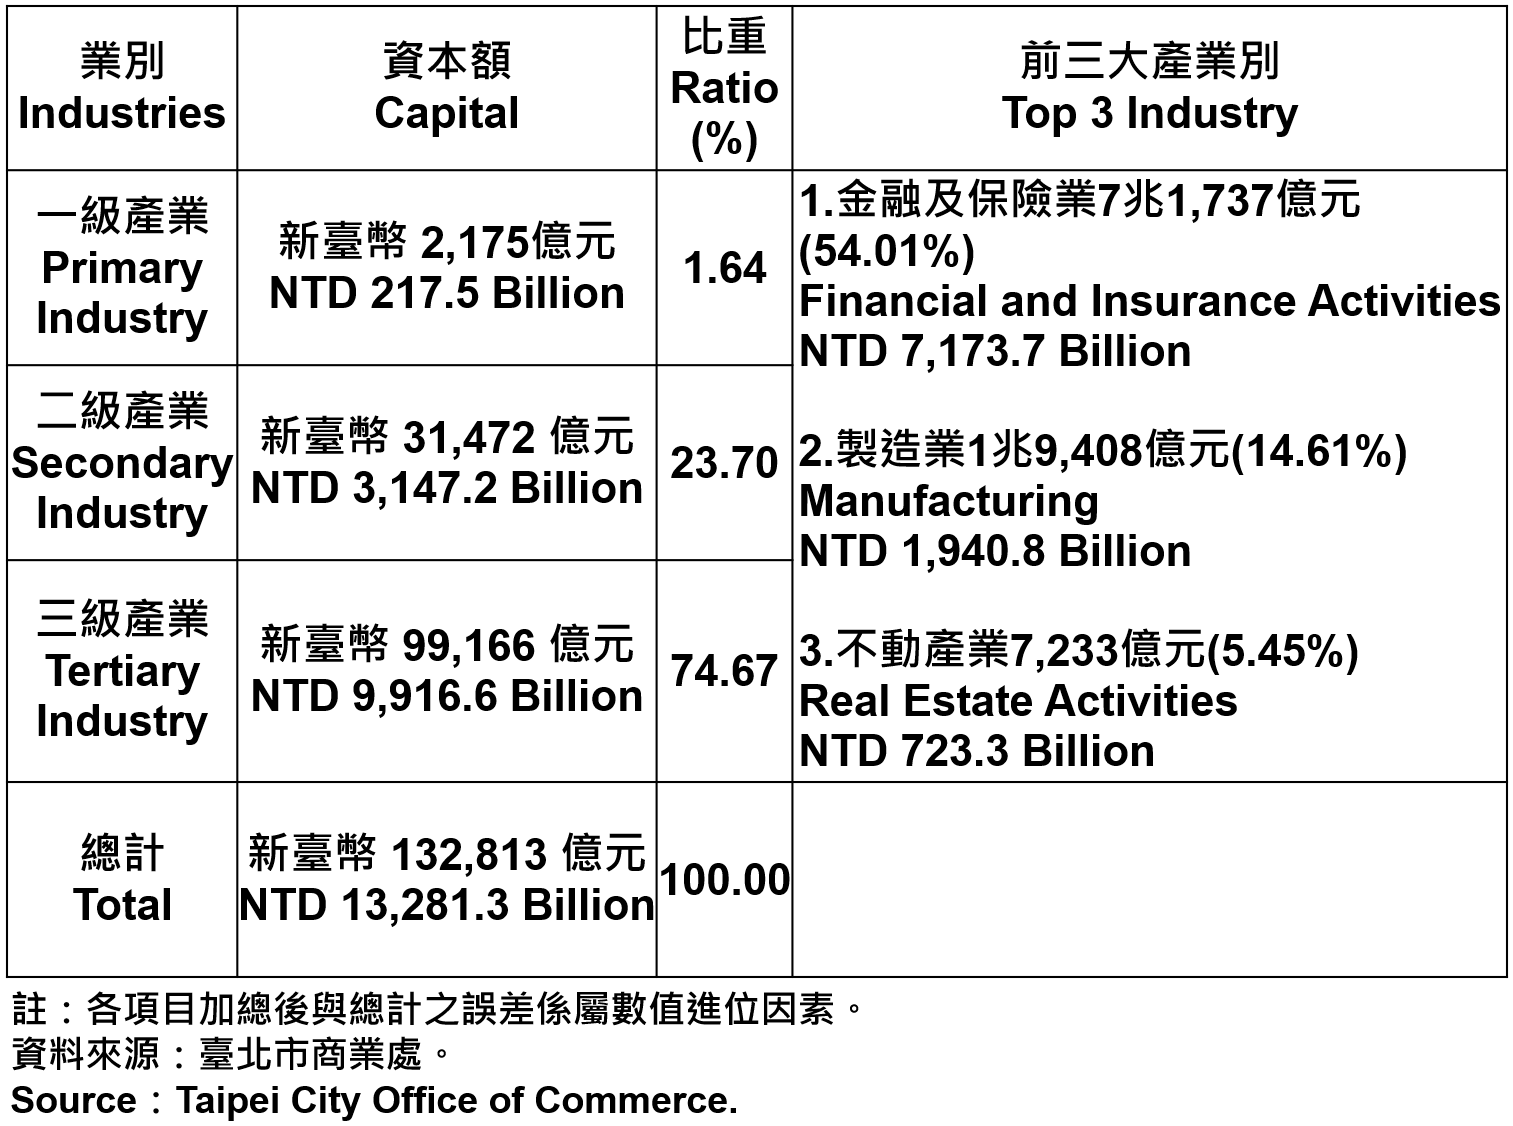 臺北市登記之公司資本總額—2021Q2 Capital for the Companies and Firms Registered in Taipei City—2021Q2